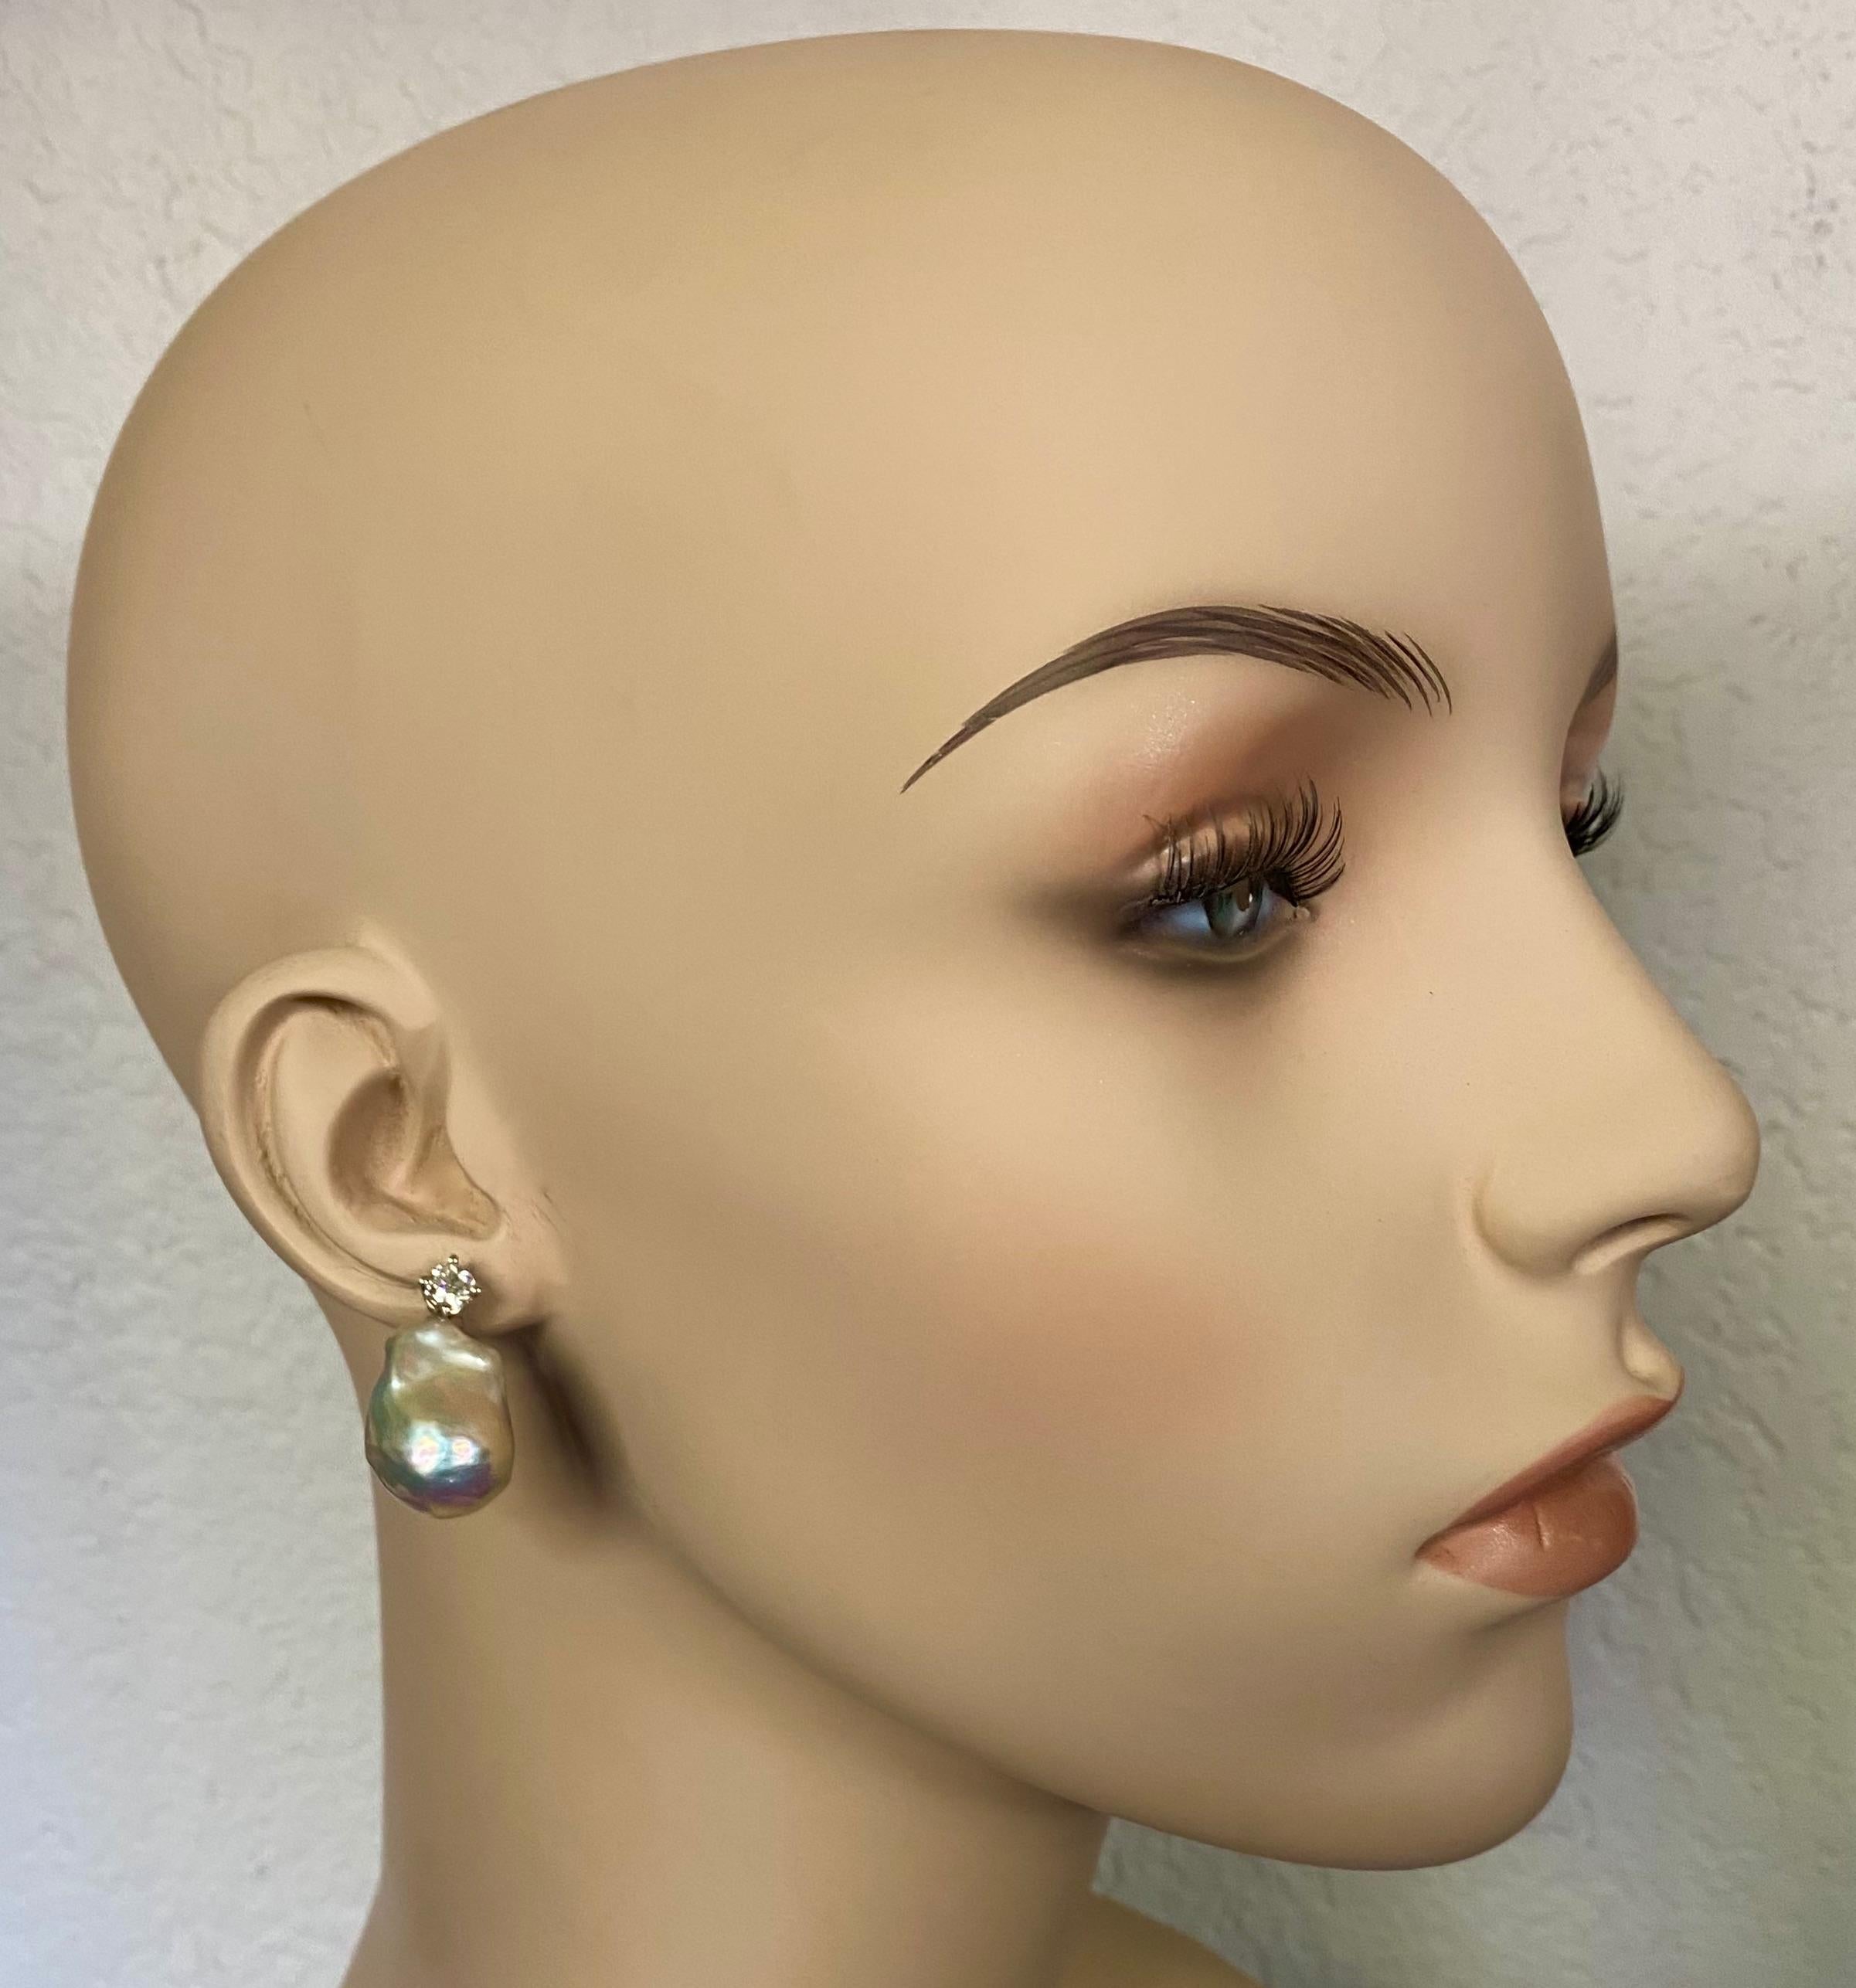 Barocke Perlen werden bei diesen klassischen Ohrringen mit Diamanten gepaart.  Die weißen Süßwasserperlen (Herkunft: China) sind bemerkenswert gut auf die Barockperlen abgestimmt.  Sie sind reinweiß und besitzen den wunderbaren Glanz, für den